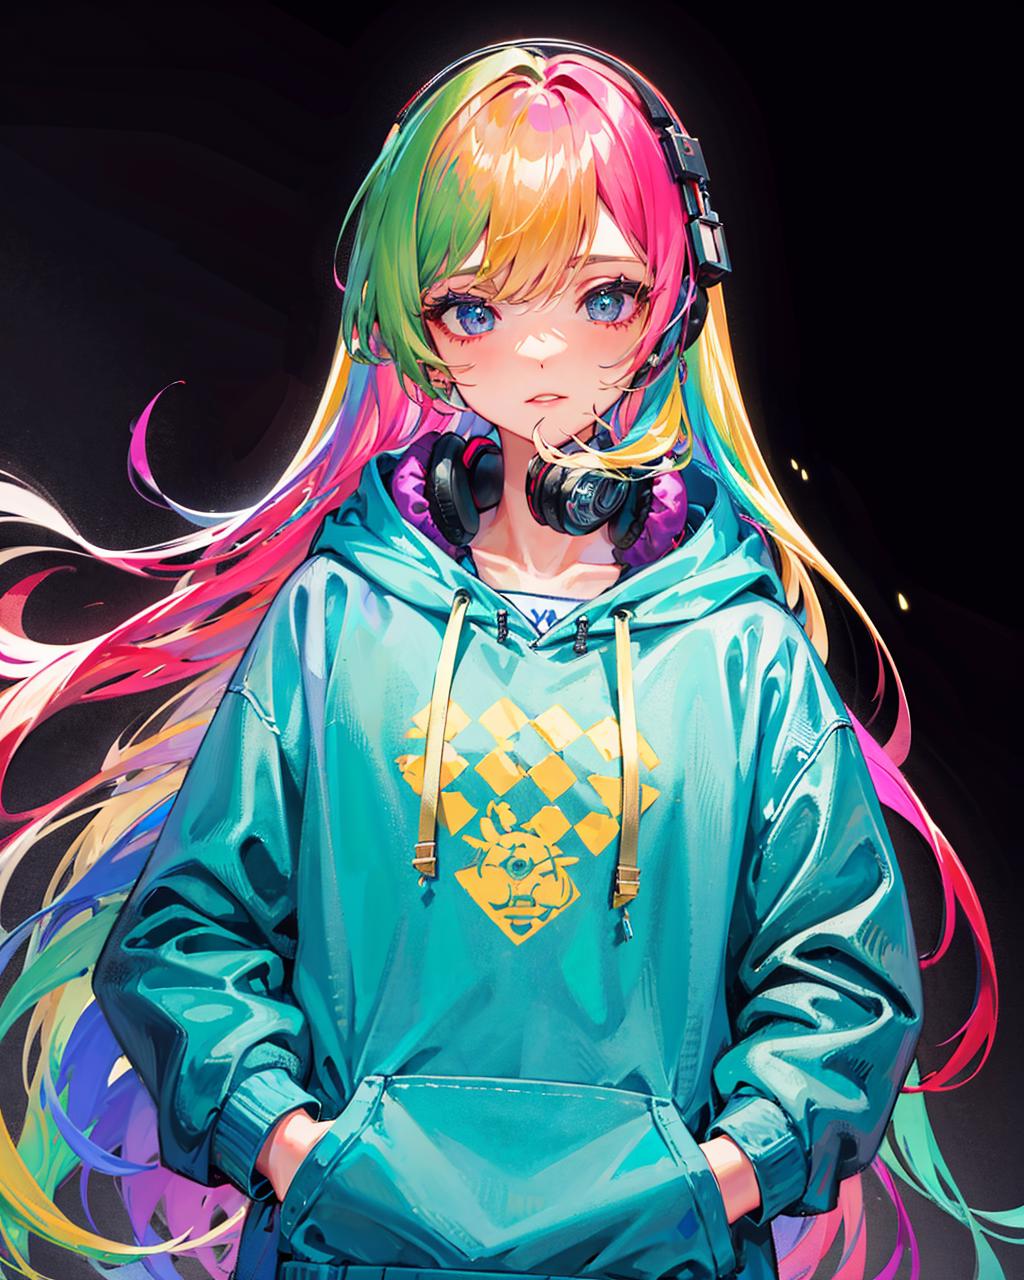 Rainbow anime girly Ships&sailors101 - Illustrations ART street